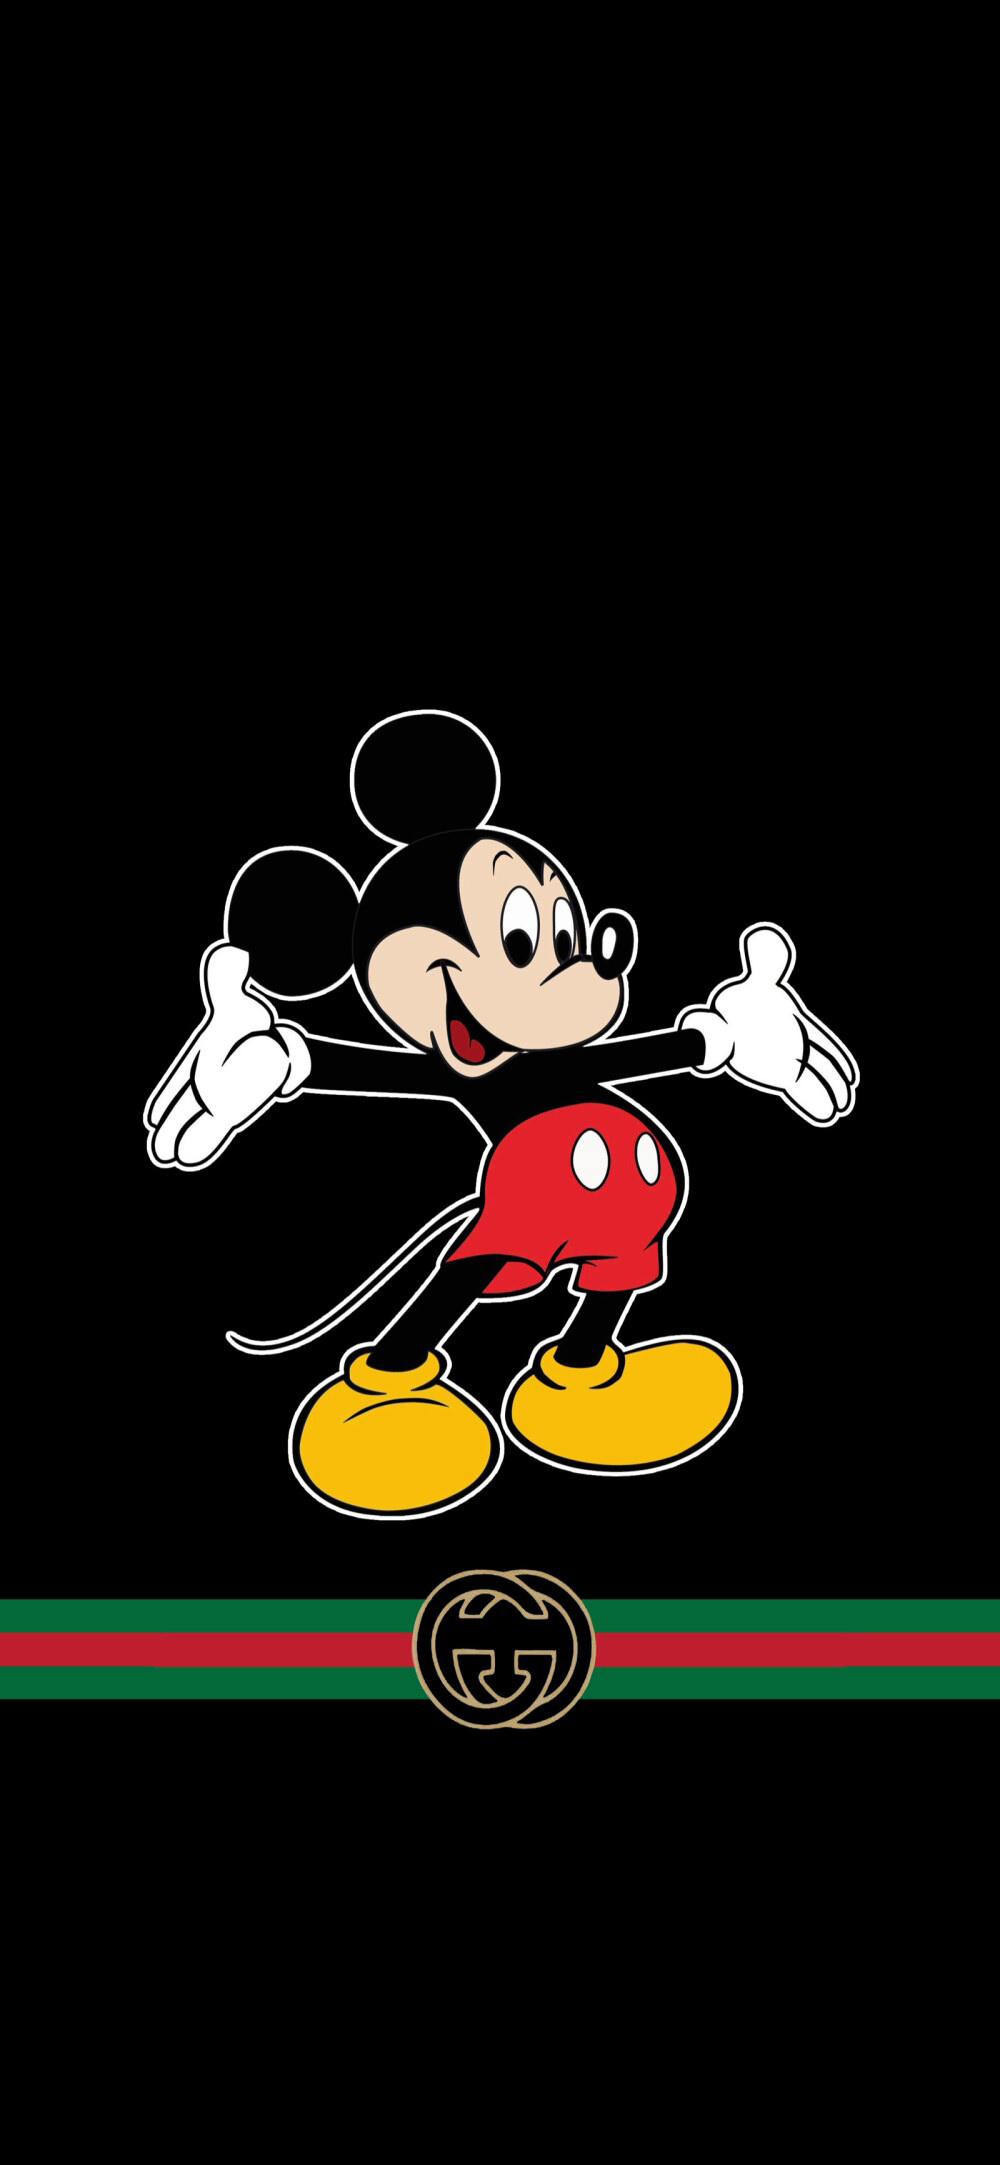 Hình Gucci Mickey nền đen tuyệt đẹp